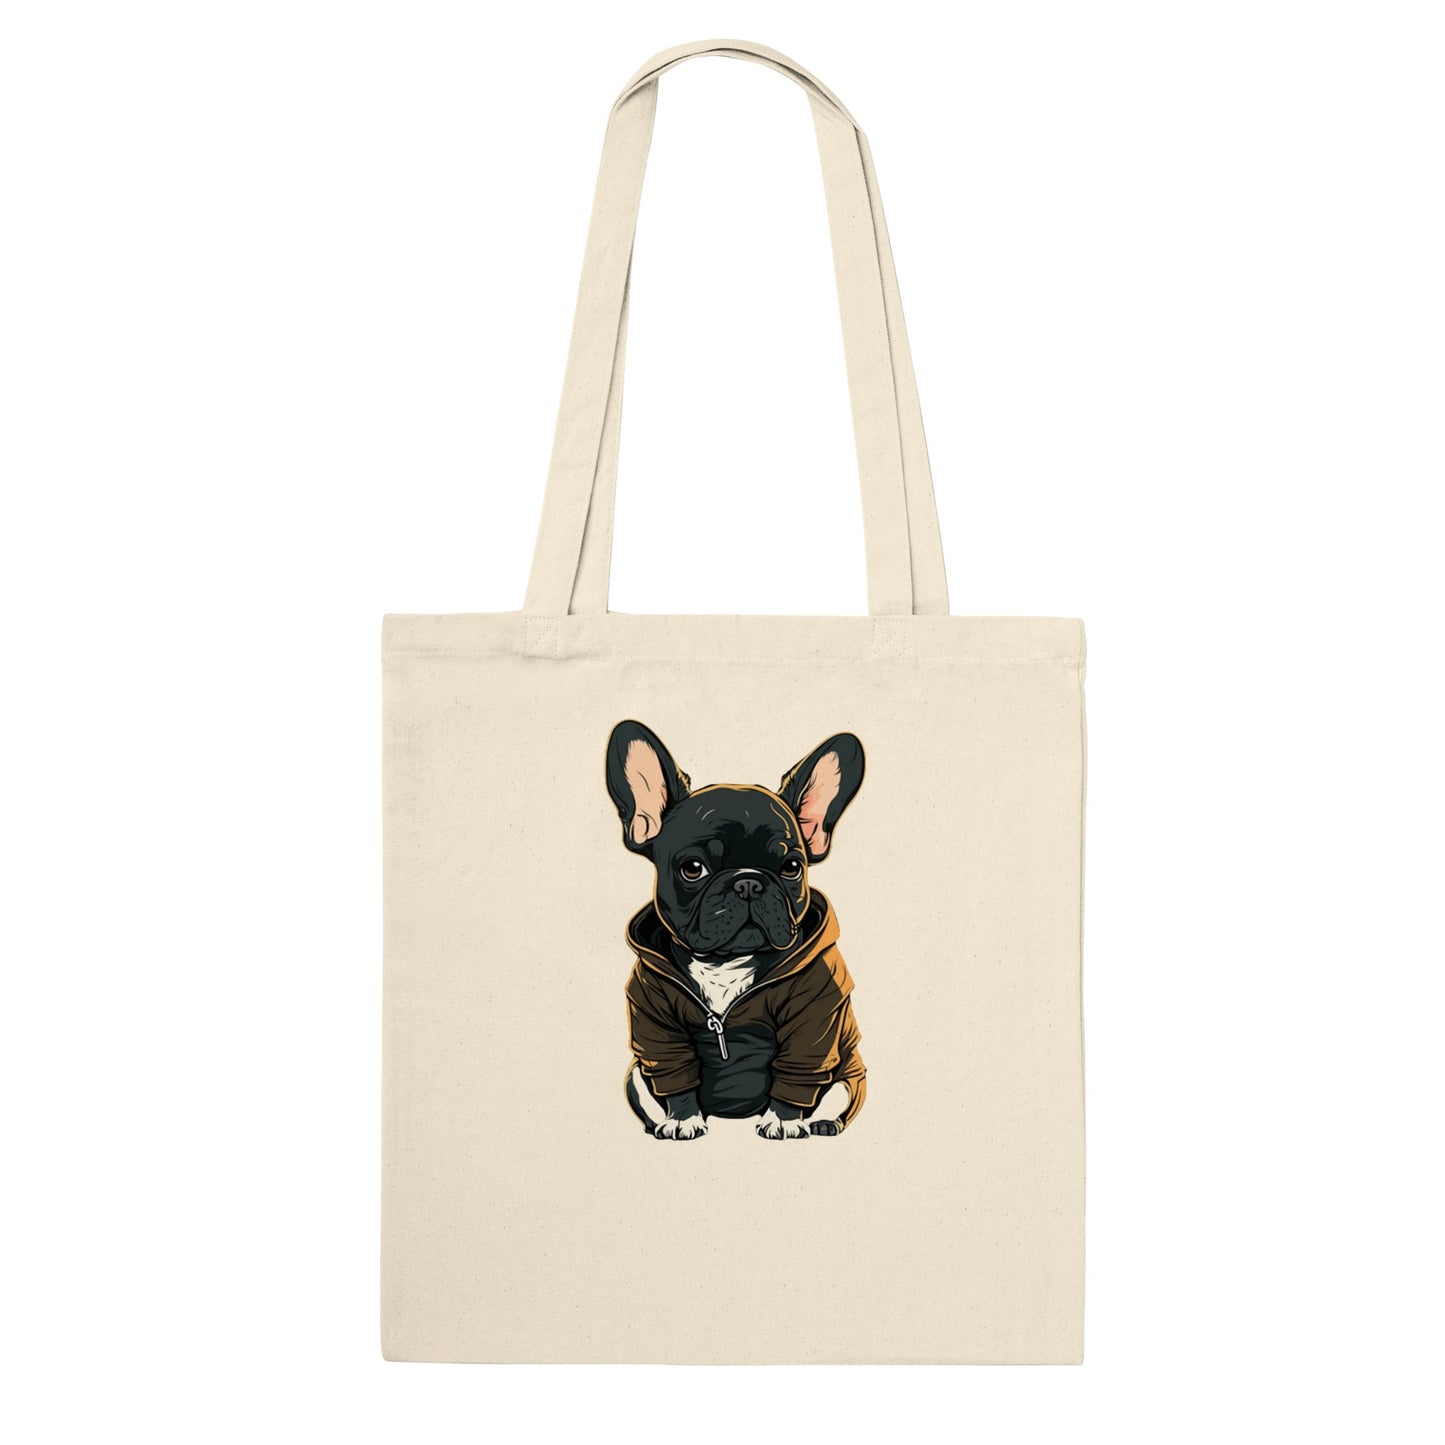 Einkaufstasche – Französische Bulldogge, dunkles Hoodie-Kunstwerk – klassische Einkaufstasche 